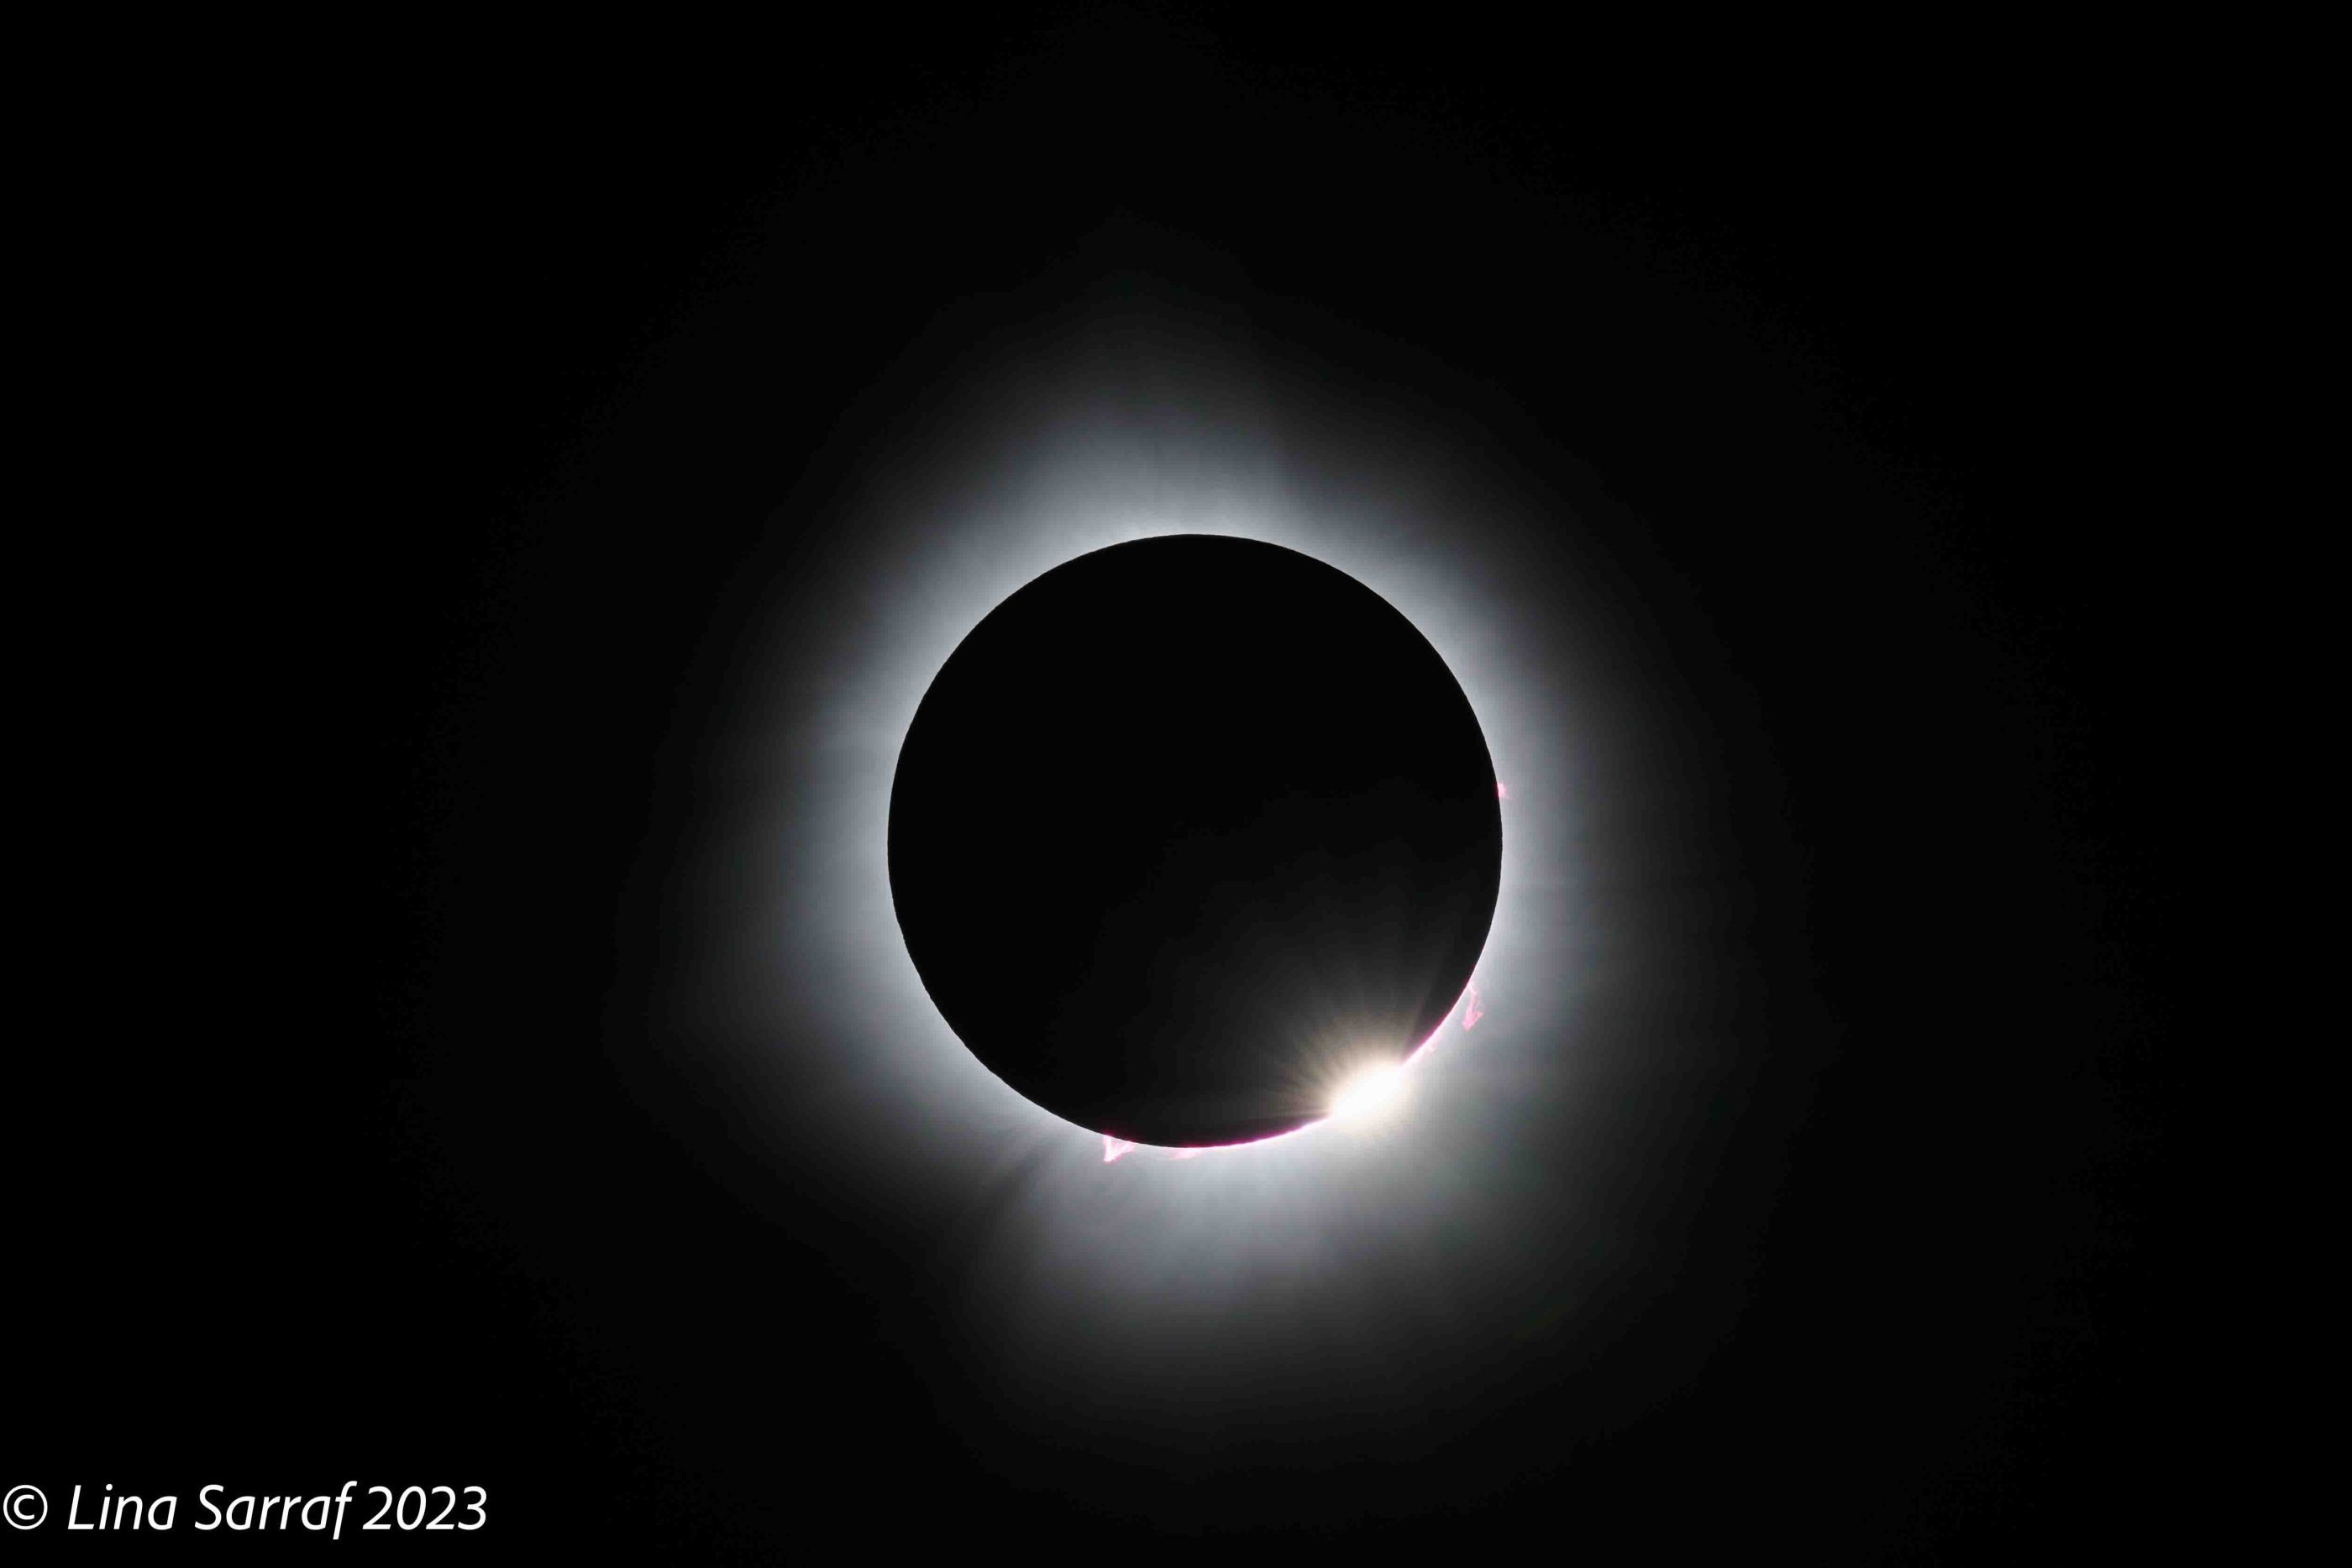  eclipse-8.jpg